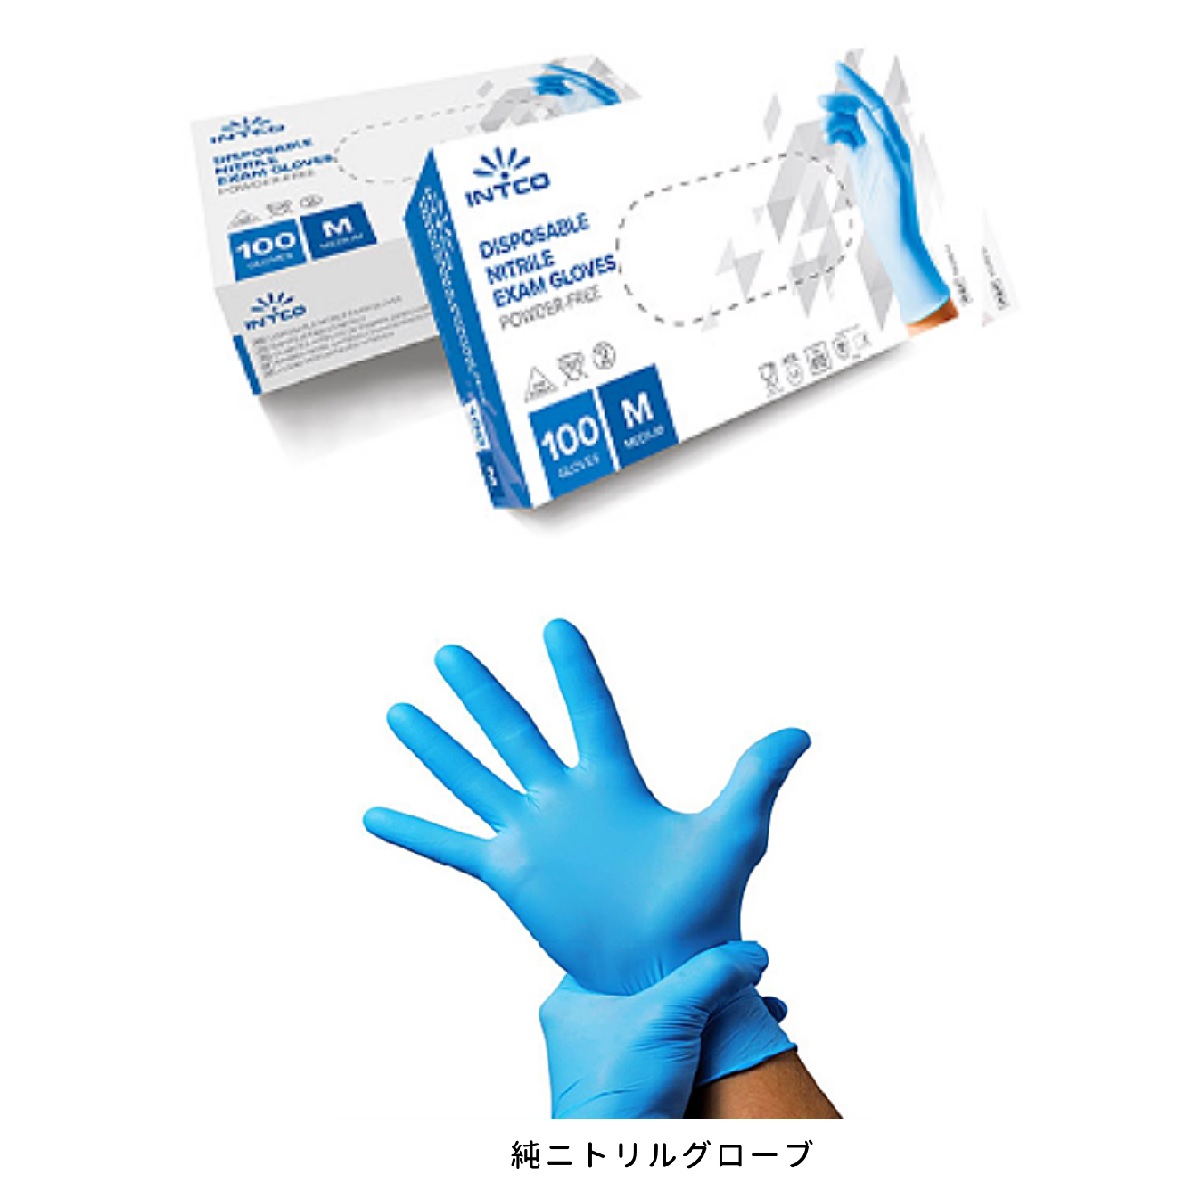 イントコ社製 純ニトリル手袋 使い捨て 手袋 パウダーフリー 100枚入 非滅菌 左右兼用 粉なし